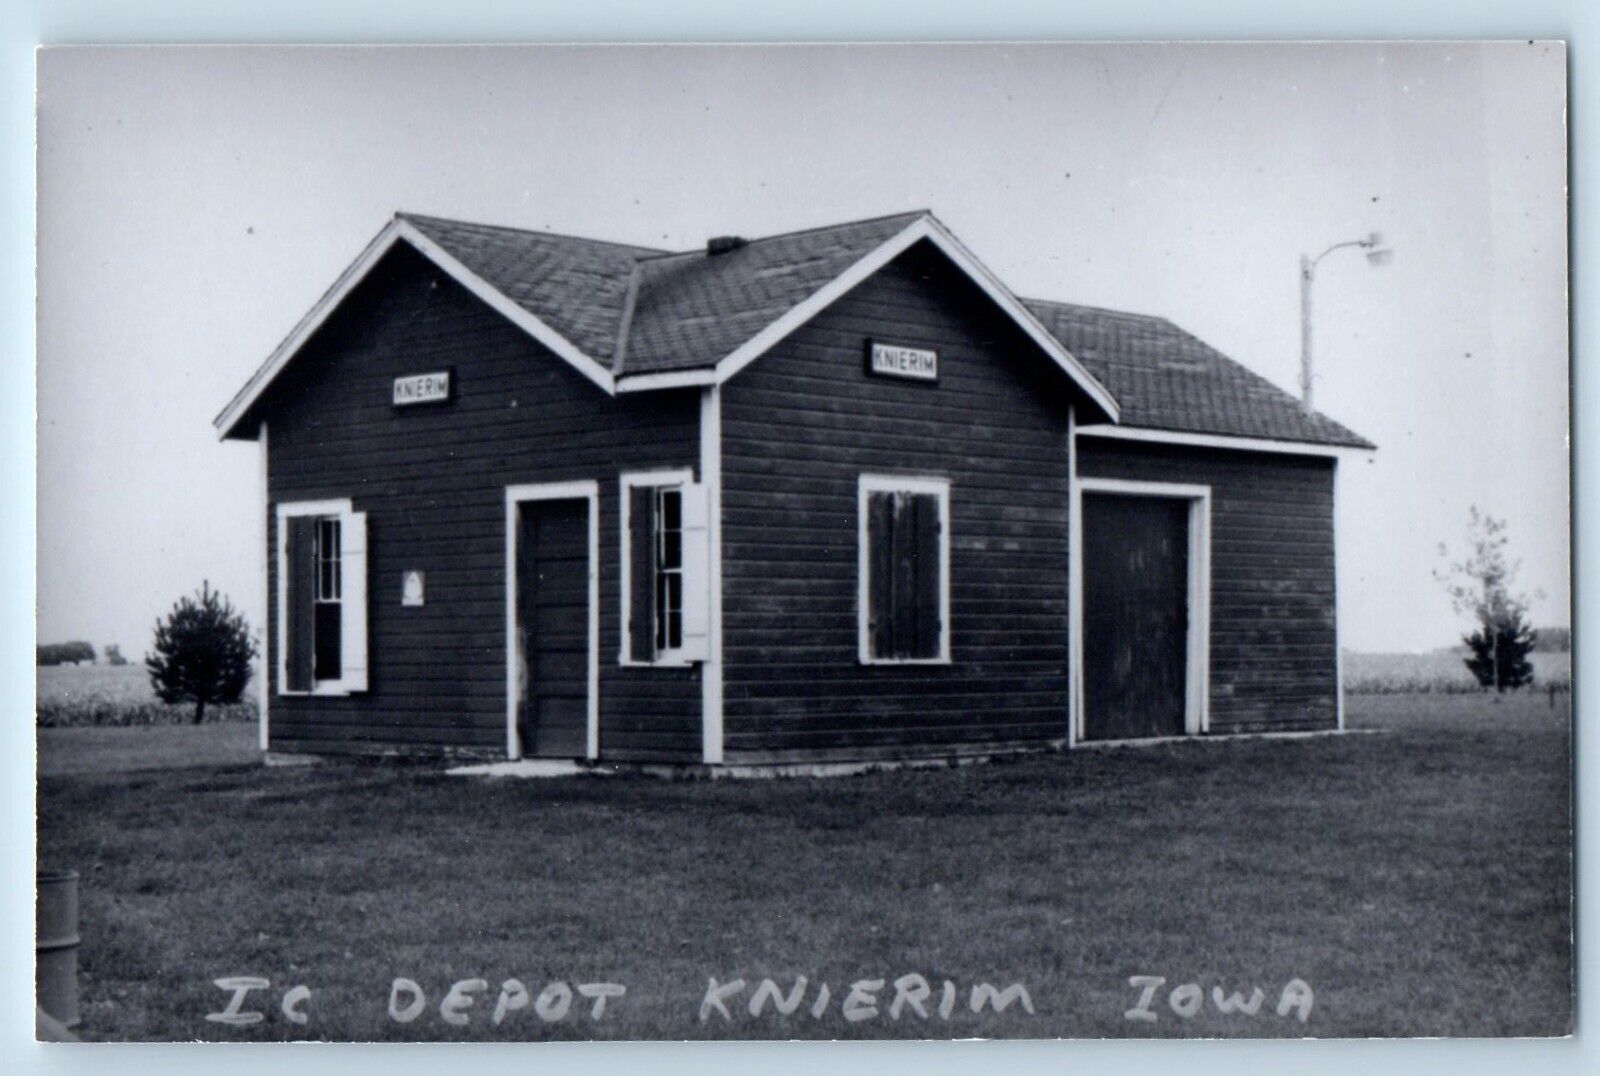 c1960 IC Depot Knierim Iowa IA Railroad Train Depot Station RPPC Photo Postcard